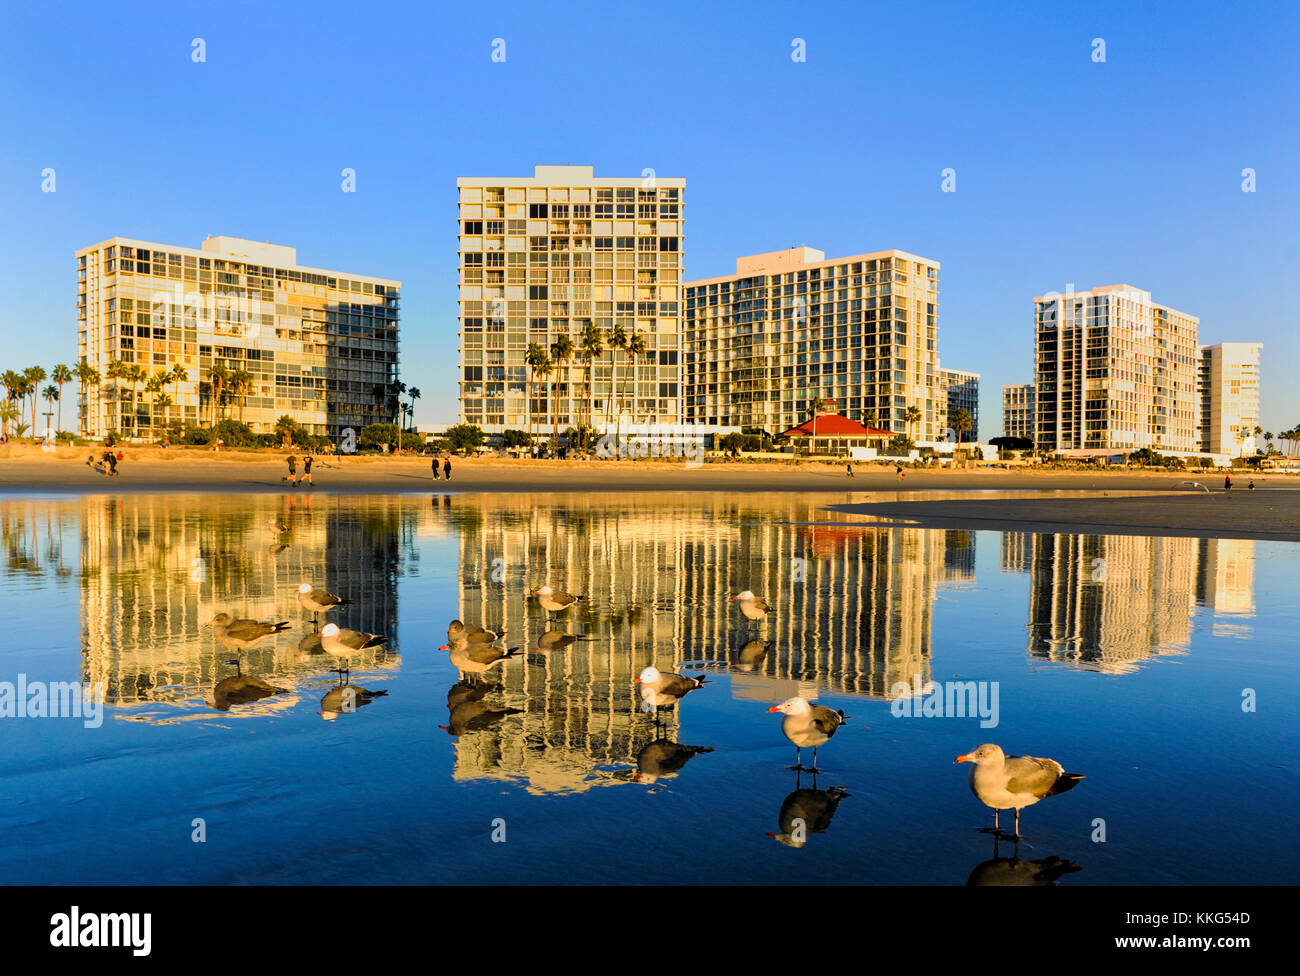 Hôtels et appartements en copropriété sur la plage de l'île Coronado, San Diego, Californie Banque D'Images